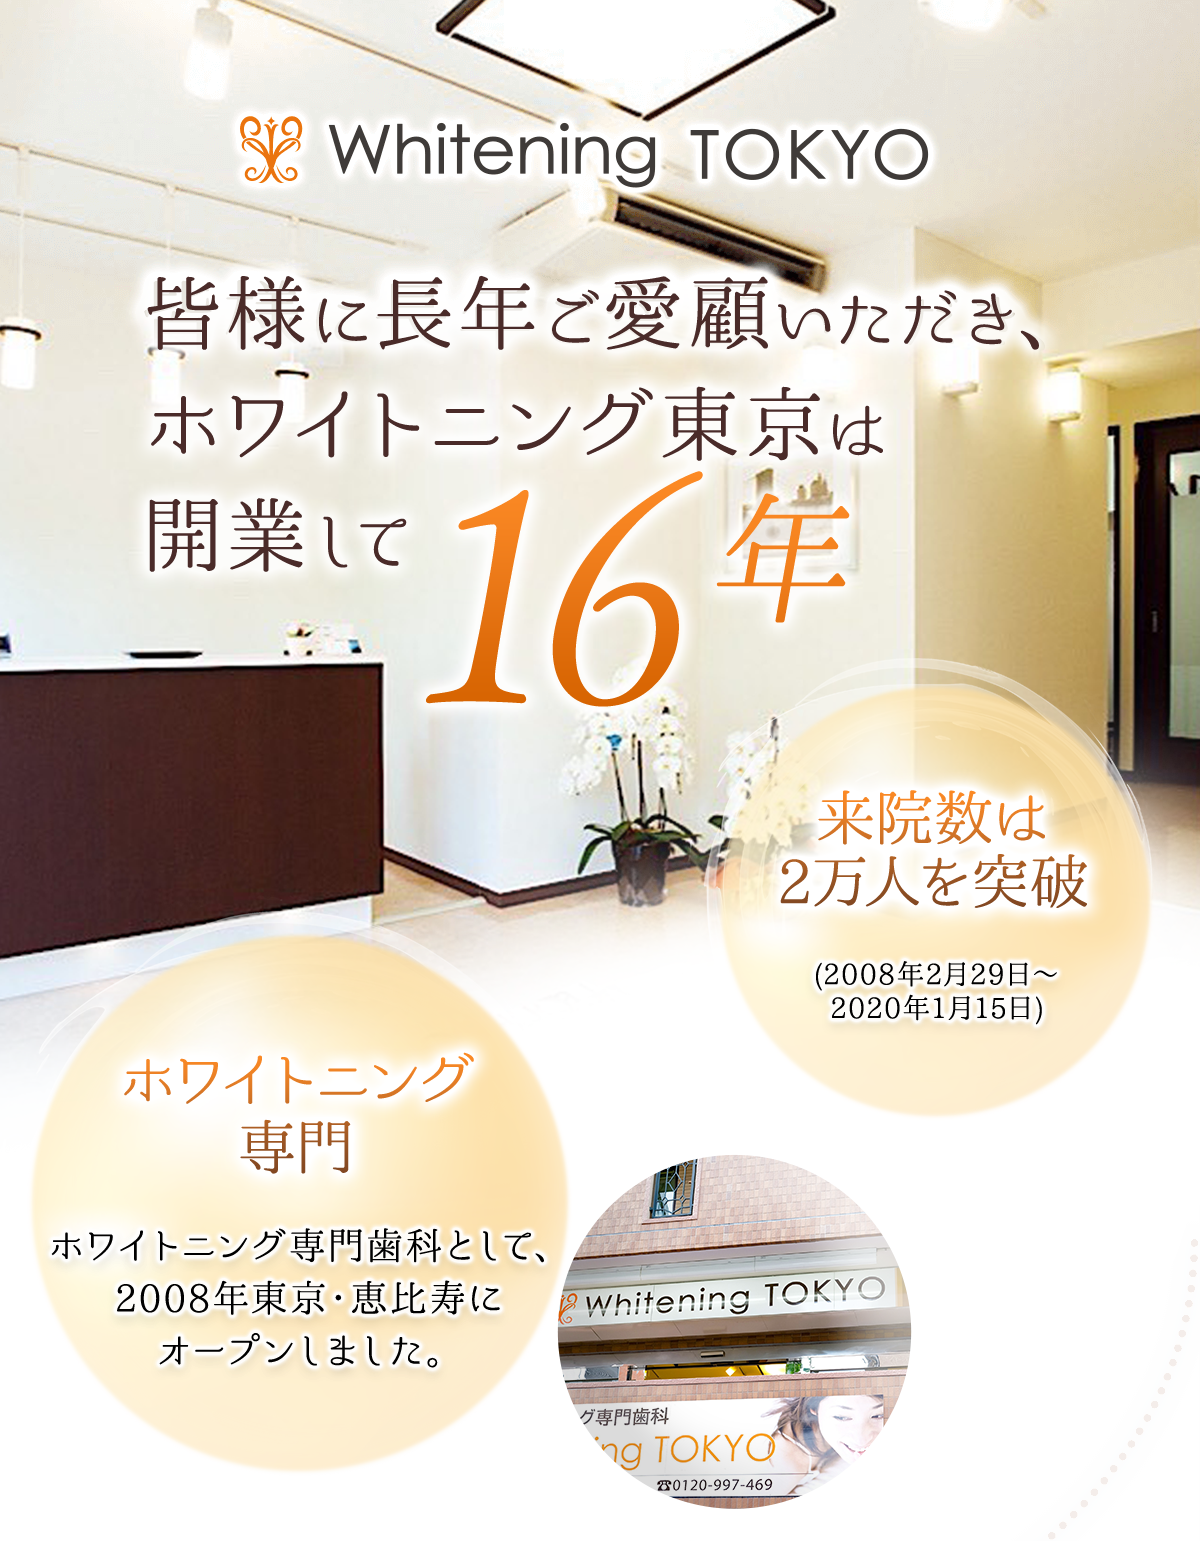 皆様に長年ご愛顧いただき、ホワイトニング東京は開業して15年 来院数は2万人を突破(2008年2月29日～2020年1月15日) ホワイトニング専門 ホワイトニング専門歯科として、2008年東京・恵比寿にオープンしました。